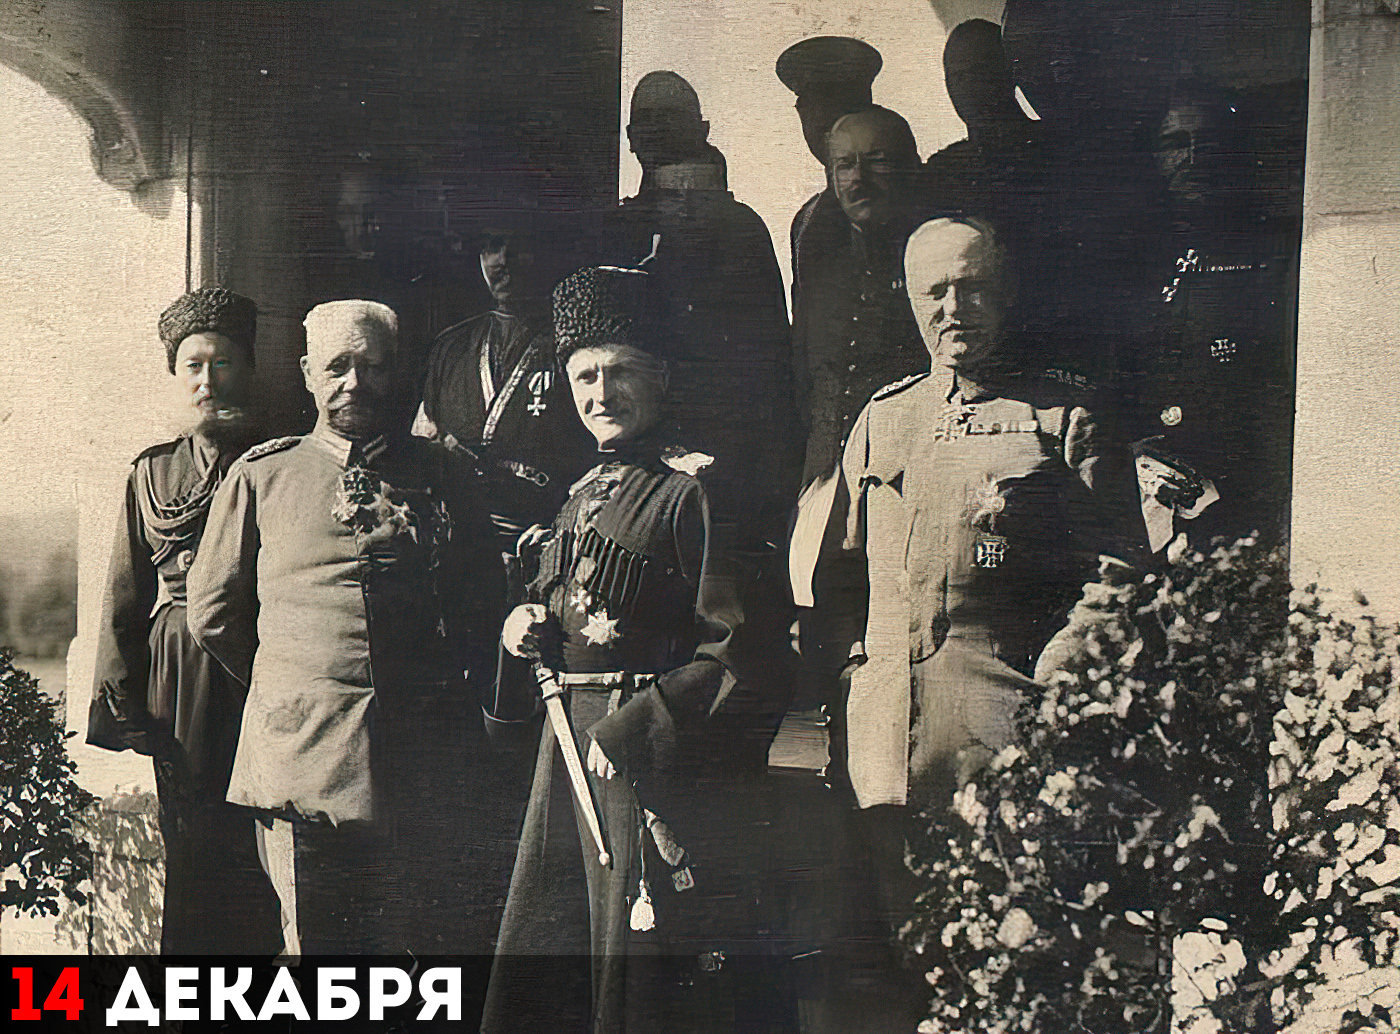 Гетман Павел Скоропадский (в центре) и немецкое командование. Берлин, сентябрь 1918 г.